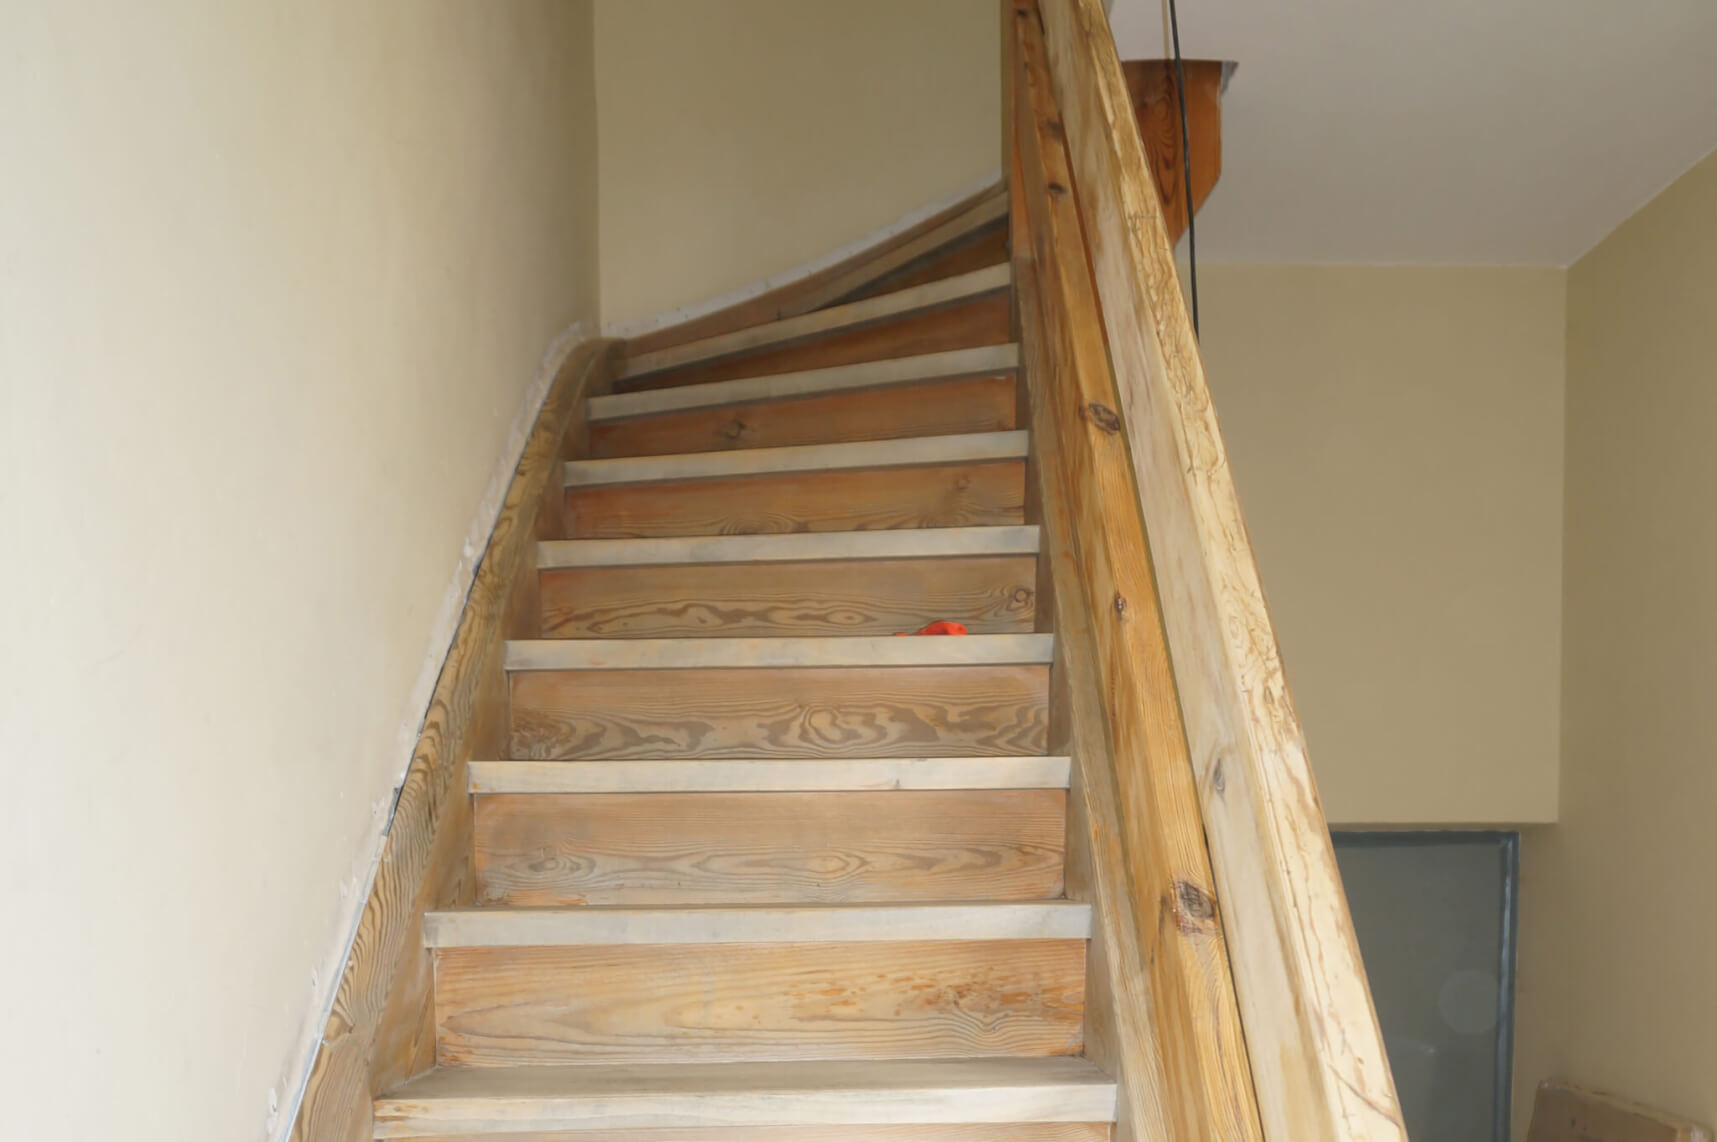 Treppenaufgang im Haus als moderne Inneneinrichtung neue Beschichtung in Holzoptik 02